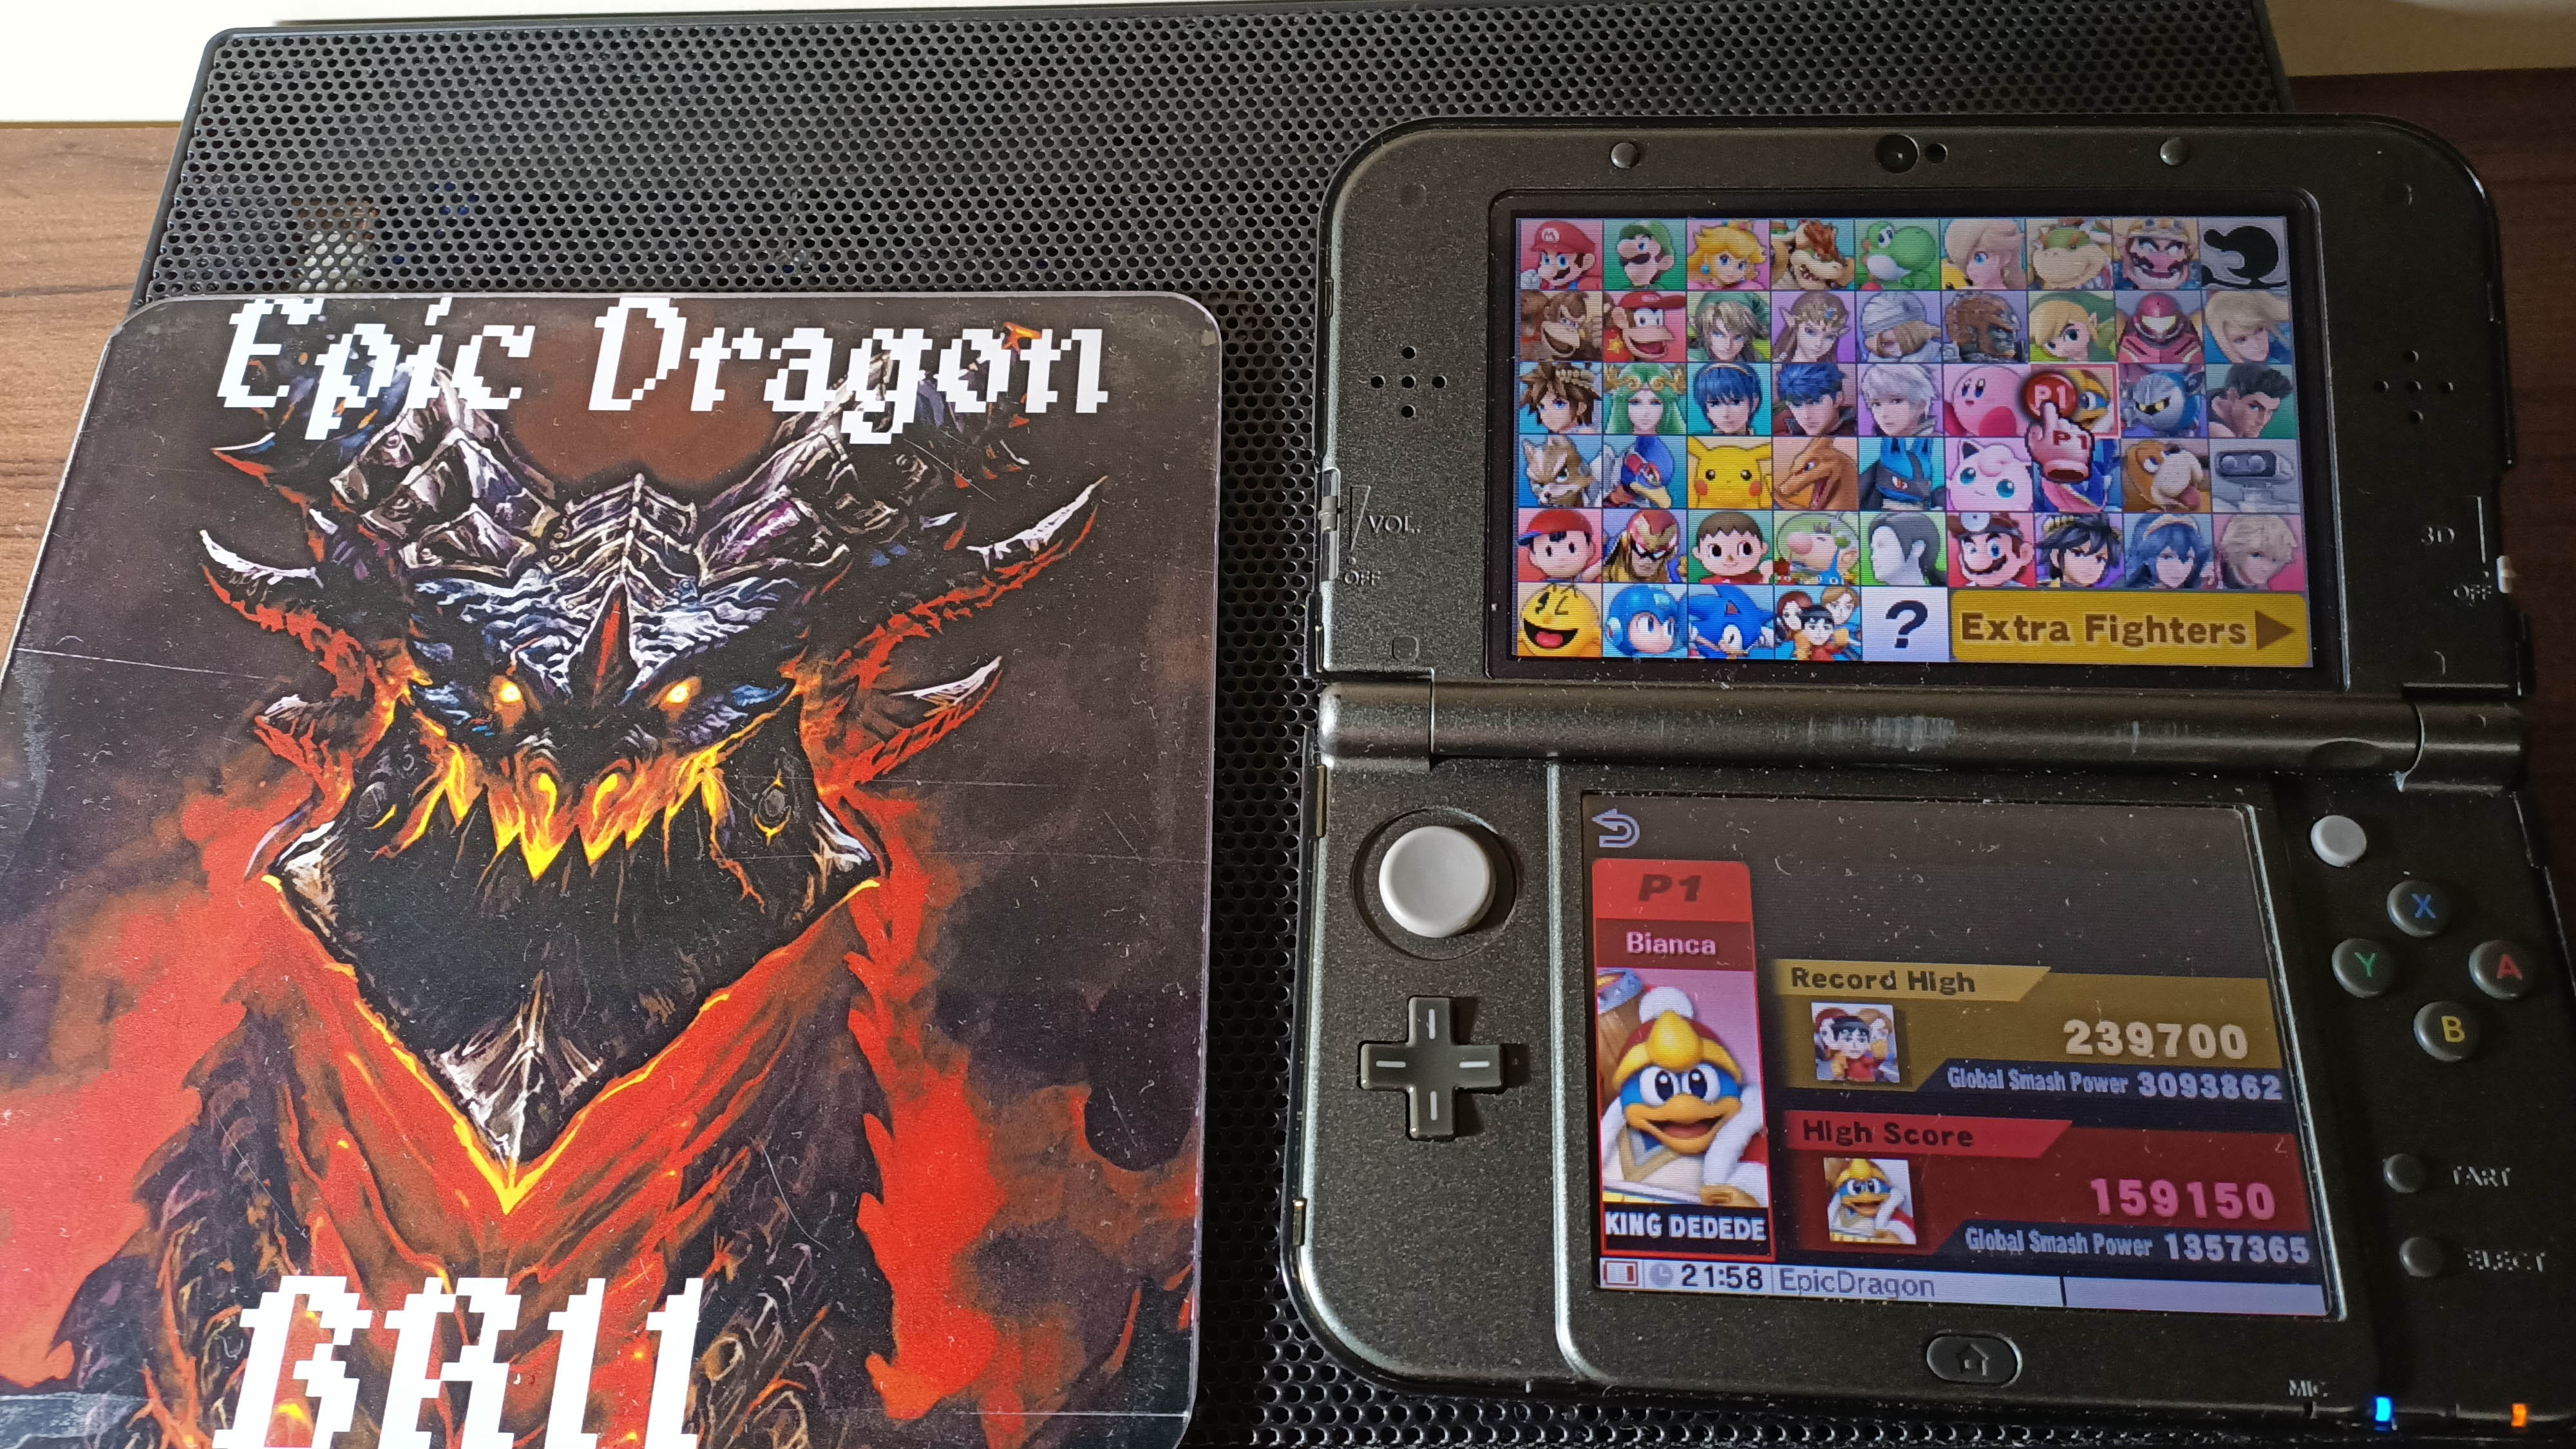 EpicDragon: Super Smash Bros. for Nintendo 3DS: Target Blast: King Dedede (Nintendo 3DS) 159,150 points on 2022-09-27 17:46:06